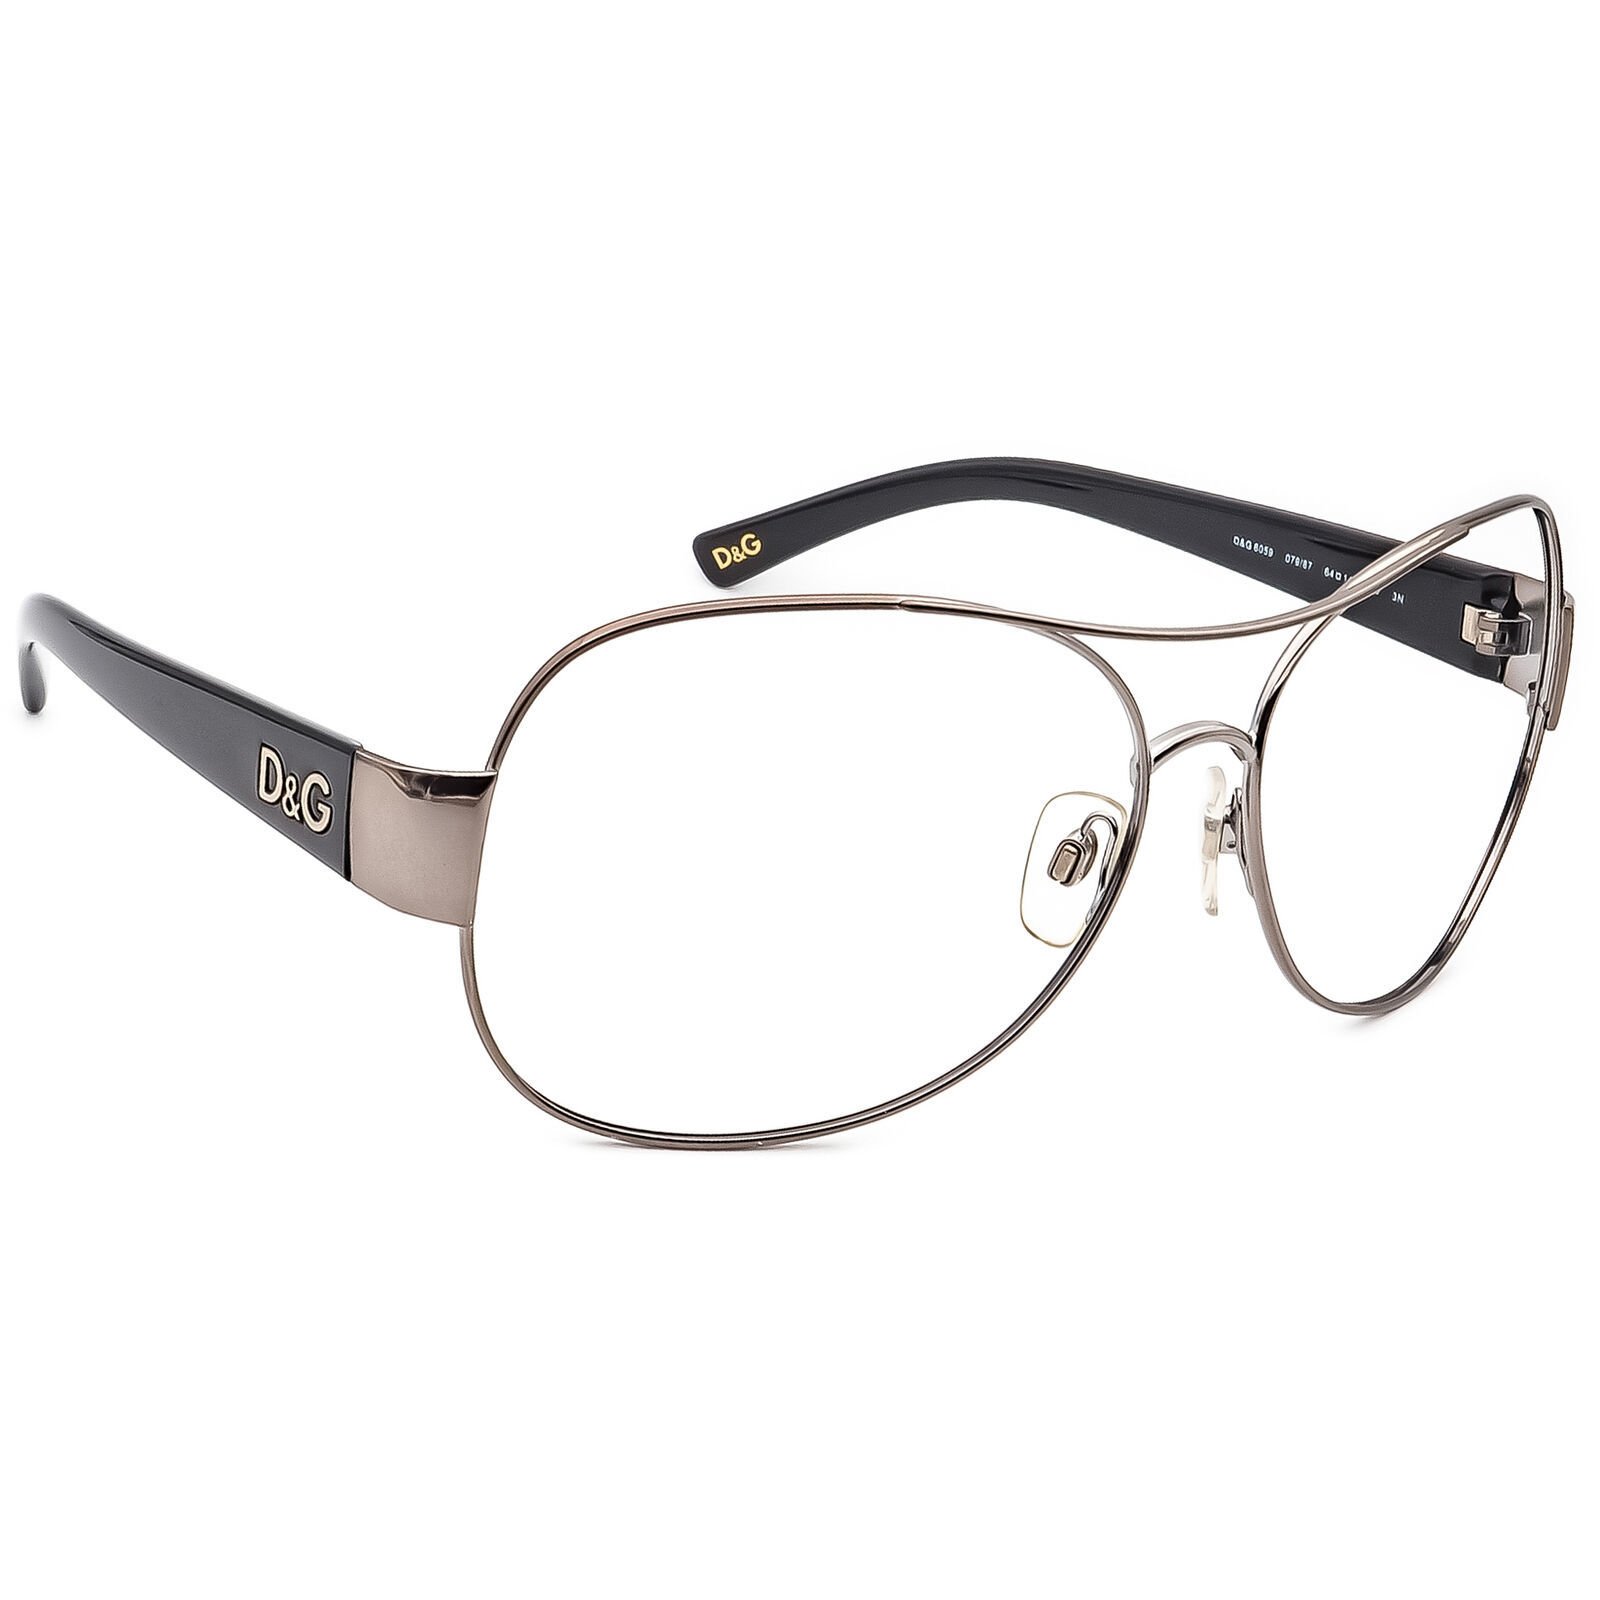 Dolce & Gabbana Sunglasses Frame Only D&G 6059 079/87 Gunmetal/Black 64 mm - $64.99